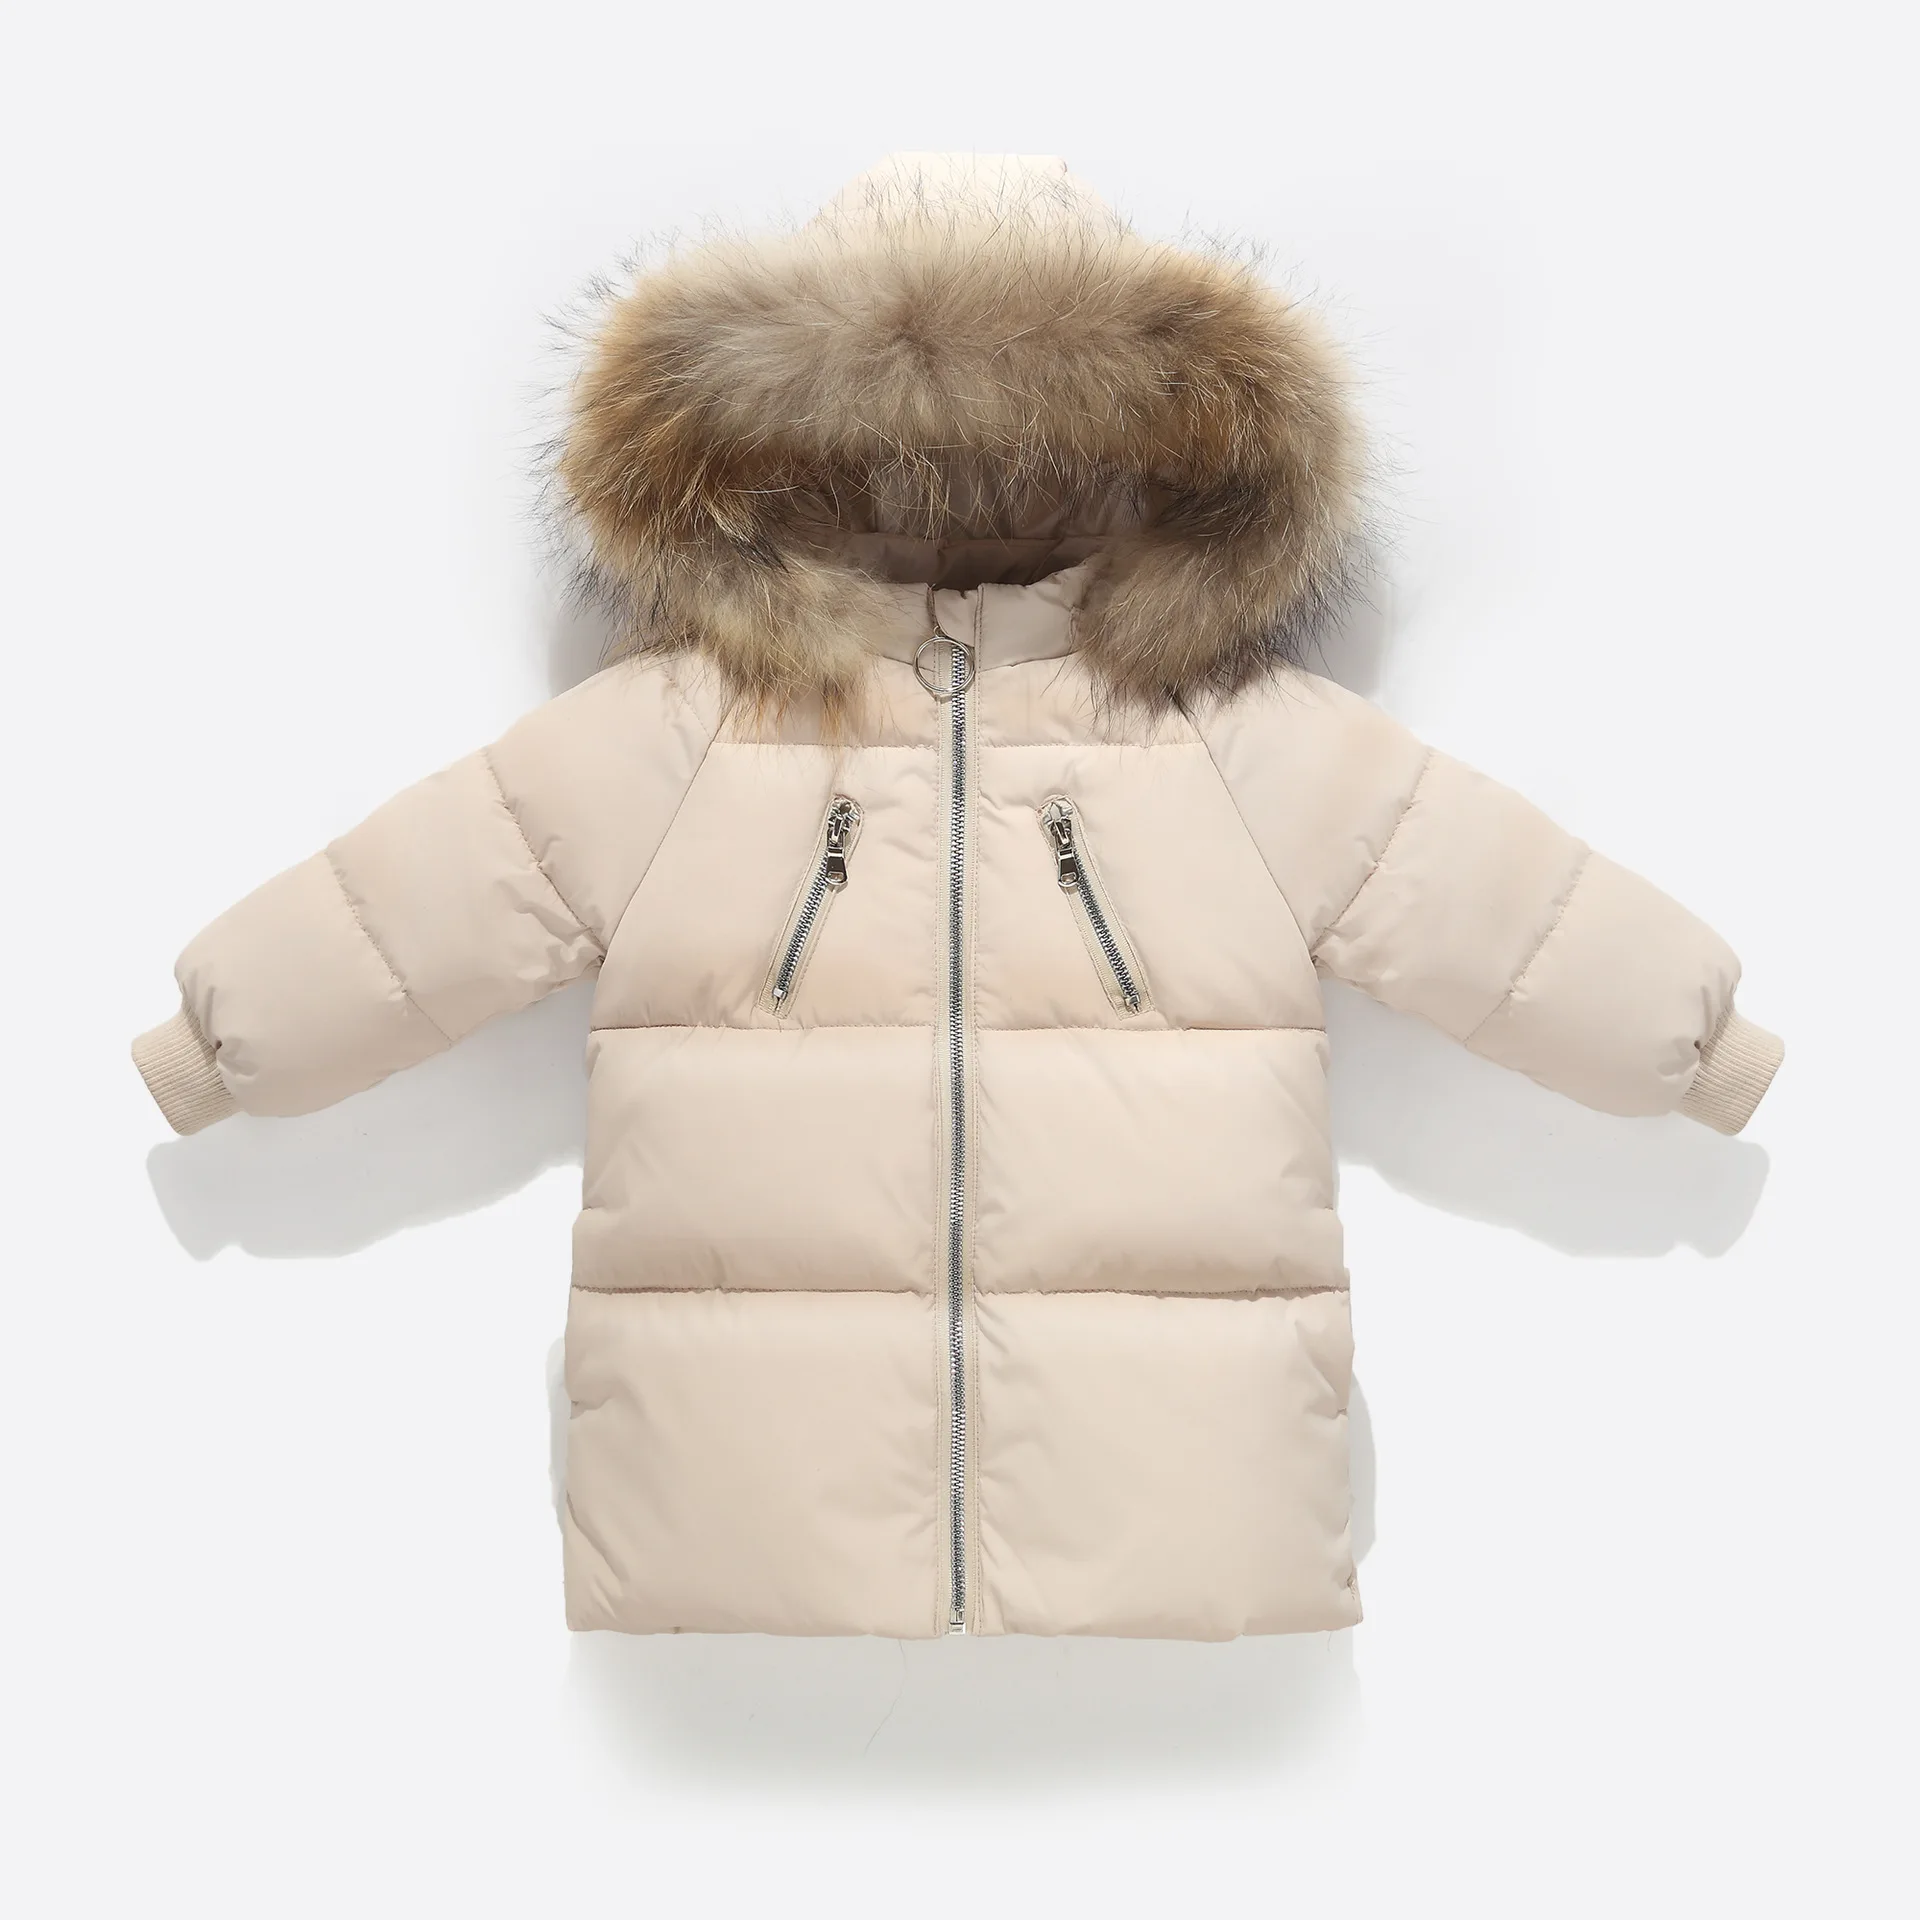 Olekid/Коллекция года, детский зимний пуховик Длинная зимняя куртка с меховым воротником для мальчиков пальто для маленьких девочек, детский зимний комбинезон, детская парка - Цвет: Бежевый